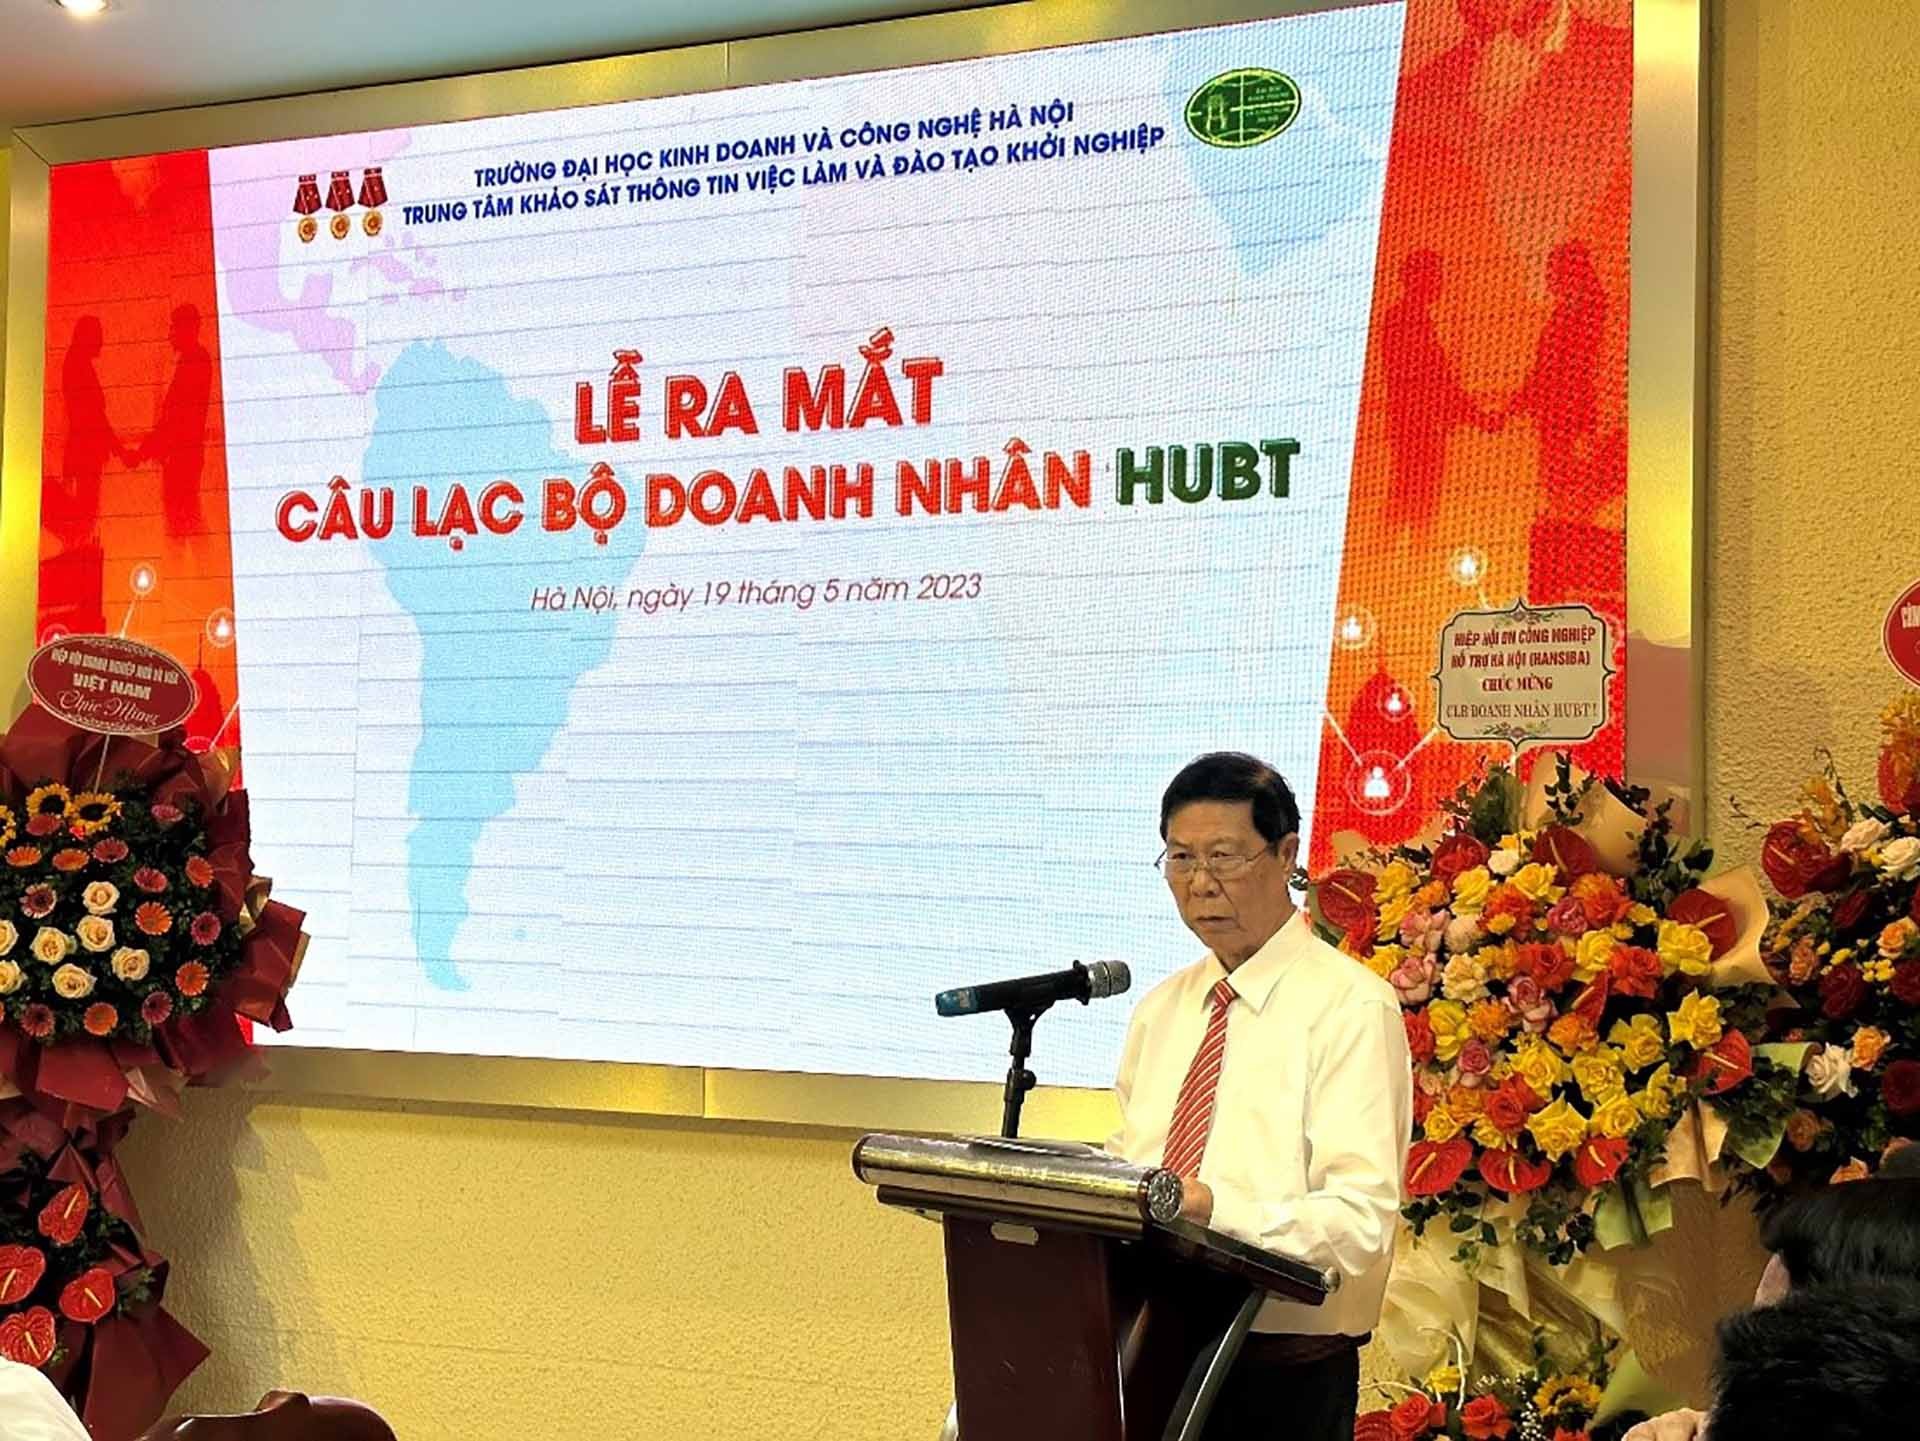 PGS. TS Phạm Văn Đăng – Giám đốc Trung tâm Khảo sát việc làm – Đào tạo khởi nghiệp phát biểu tại Lễ ra mắt